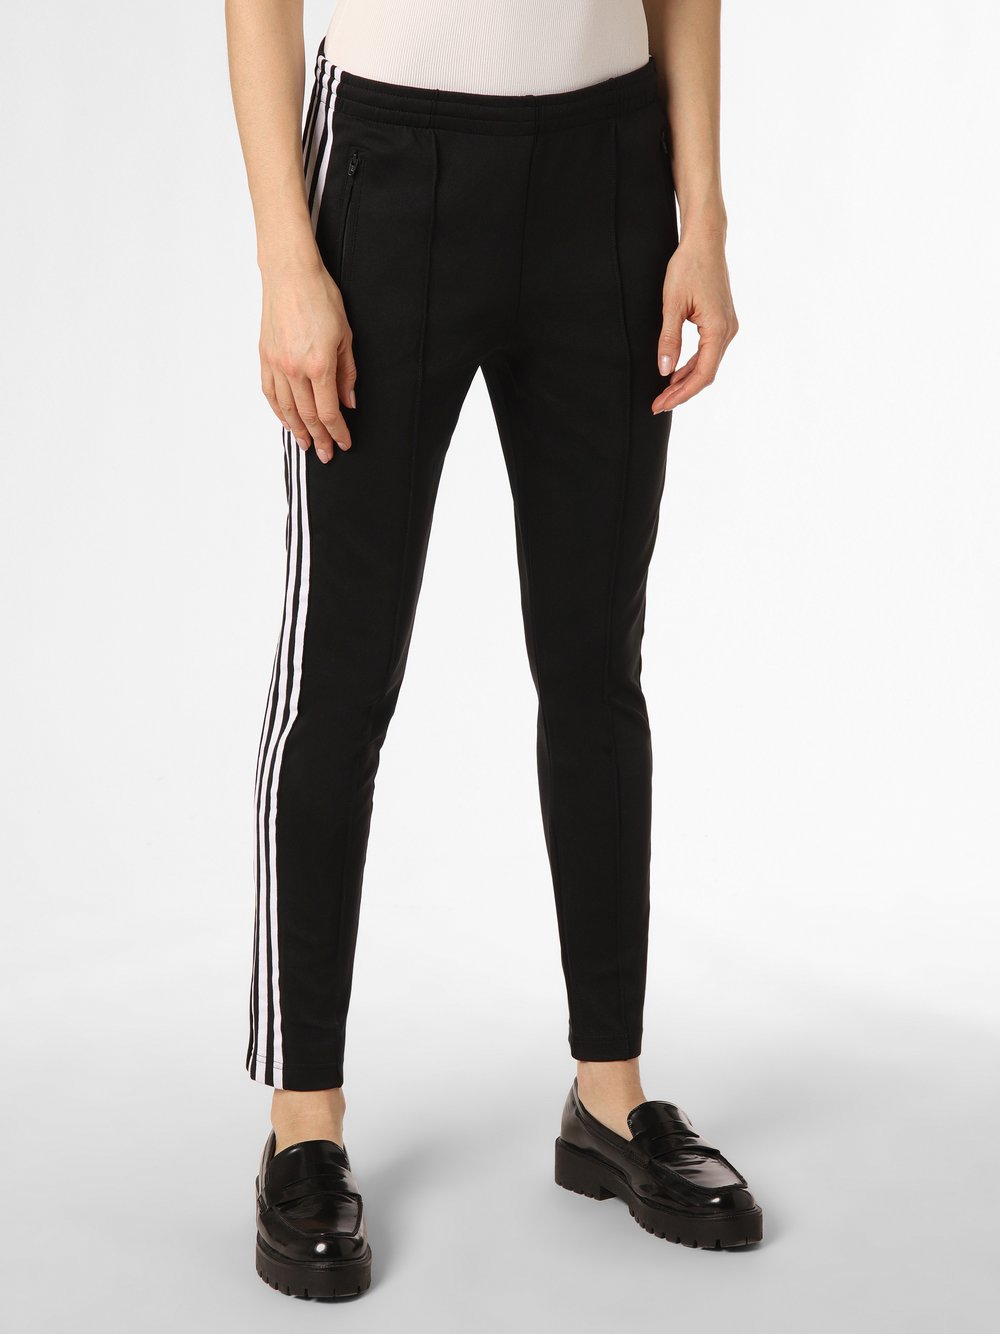 Obraz przedstawiający adidas Originals Spodnie Kobiety czarny jednolity, 34